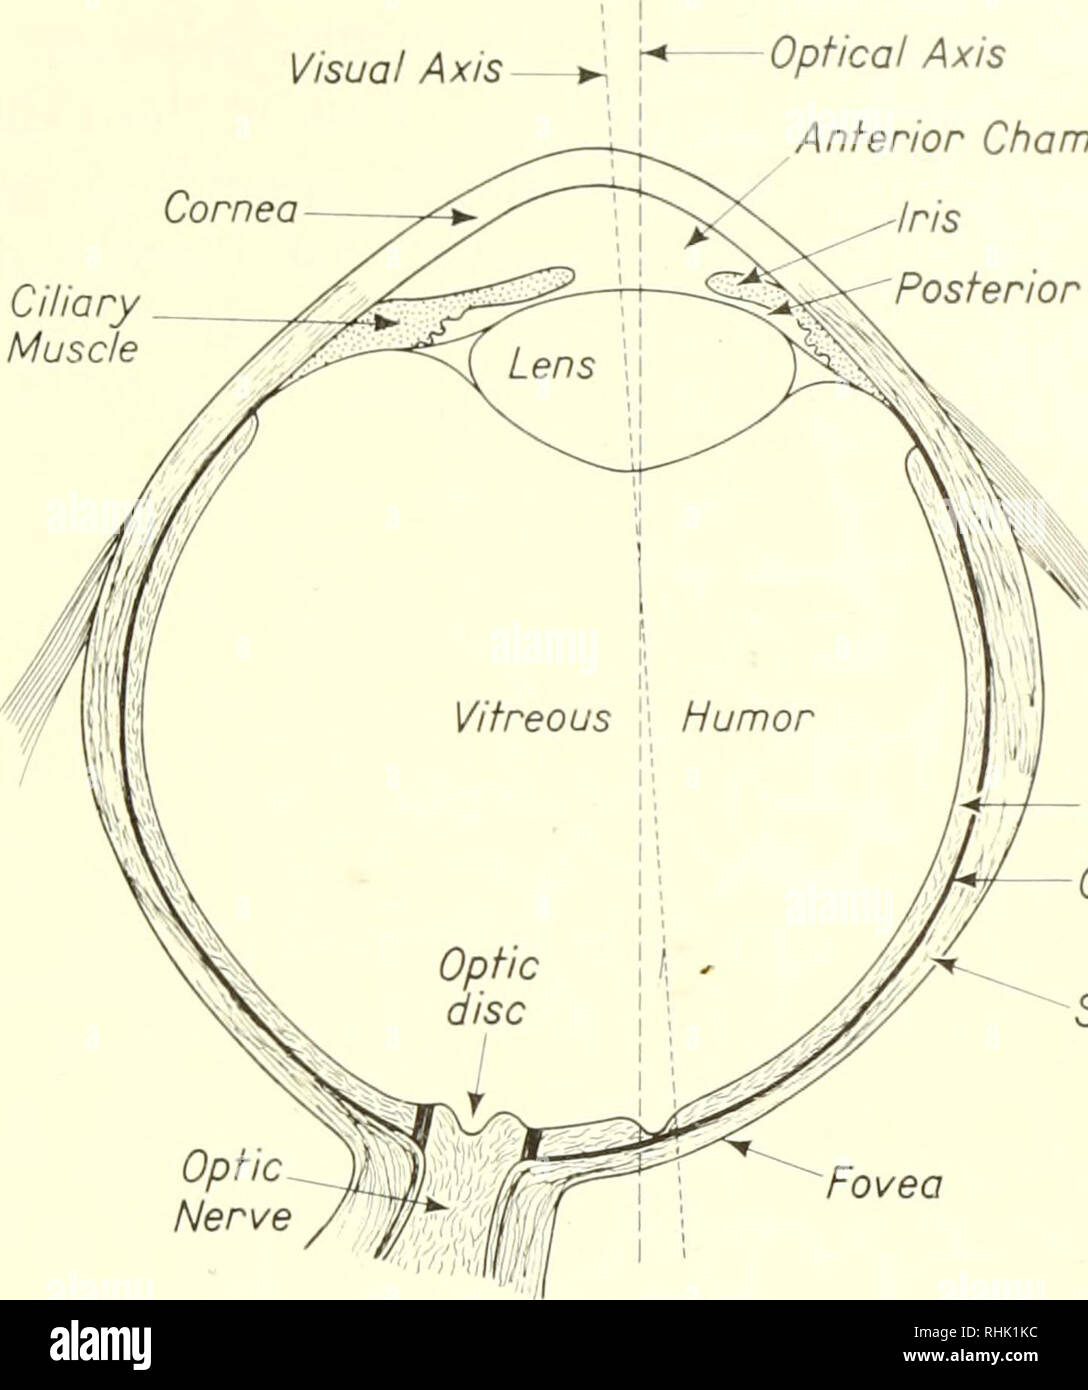 . Biophysikalische Wissenschaft. Biophysik. 2:3/Licht und das Auge 35 Die dritte und die innerste Schicht des Auges ist die Netzhaut. Die aktive photorezeptoren, genannt, sind Stäbchen und Zapfen in der Netzhaut. Es ist zweckmäßig, die Netzhaut teilen sich in 10 Schichten. Licht muss durch visuelle Achse Hornhaut ciliary Muskels optische Achse der vorderen Augenkammer Iris hinteren Kammer. Retina Chorioidea Layer Sclera Sehnerv Fovea Abbildung 3. Das Auge. Nach A. und W. Maximow Bloom, Lehrbuch der Histologie (Philadelphia: W. B. Saunders Company, 1957). Acht dieser vor Erreichen der Stäbchen und Zapfen in der entfernt Stockfoto